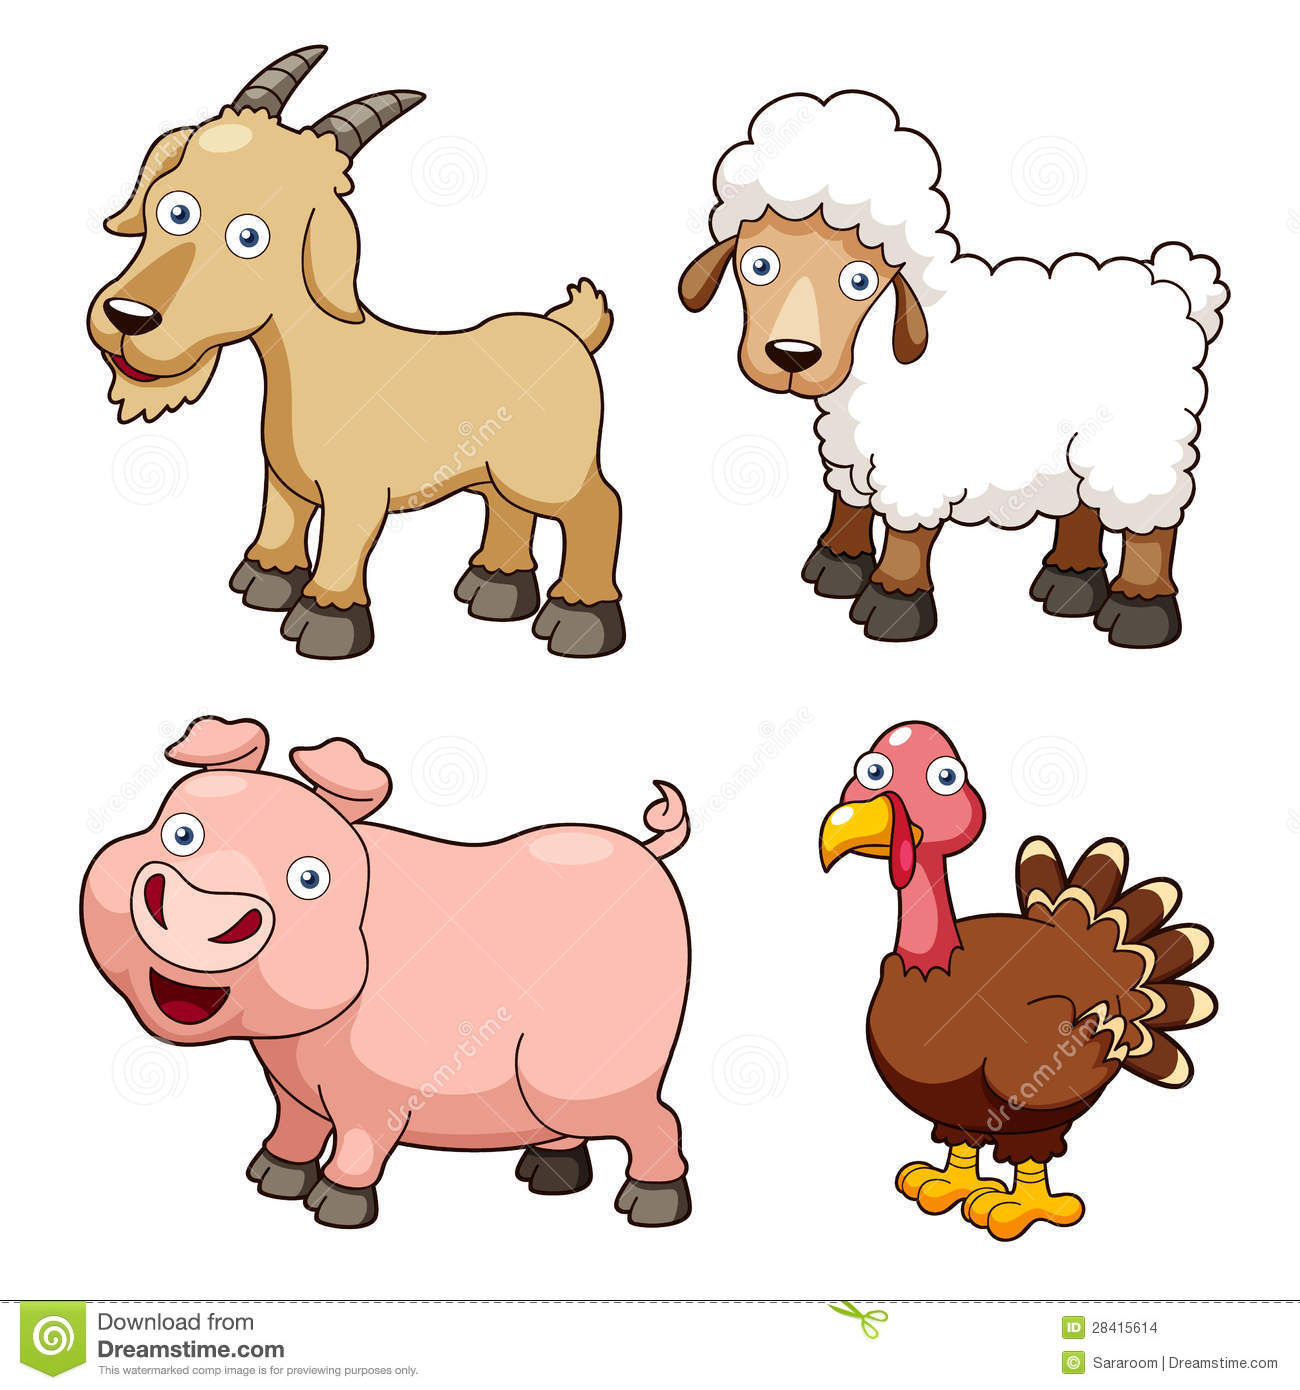 Farm animals cartoon. Farm animals cartoon. animal farm clip art